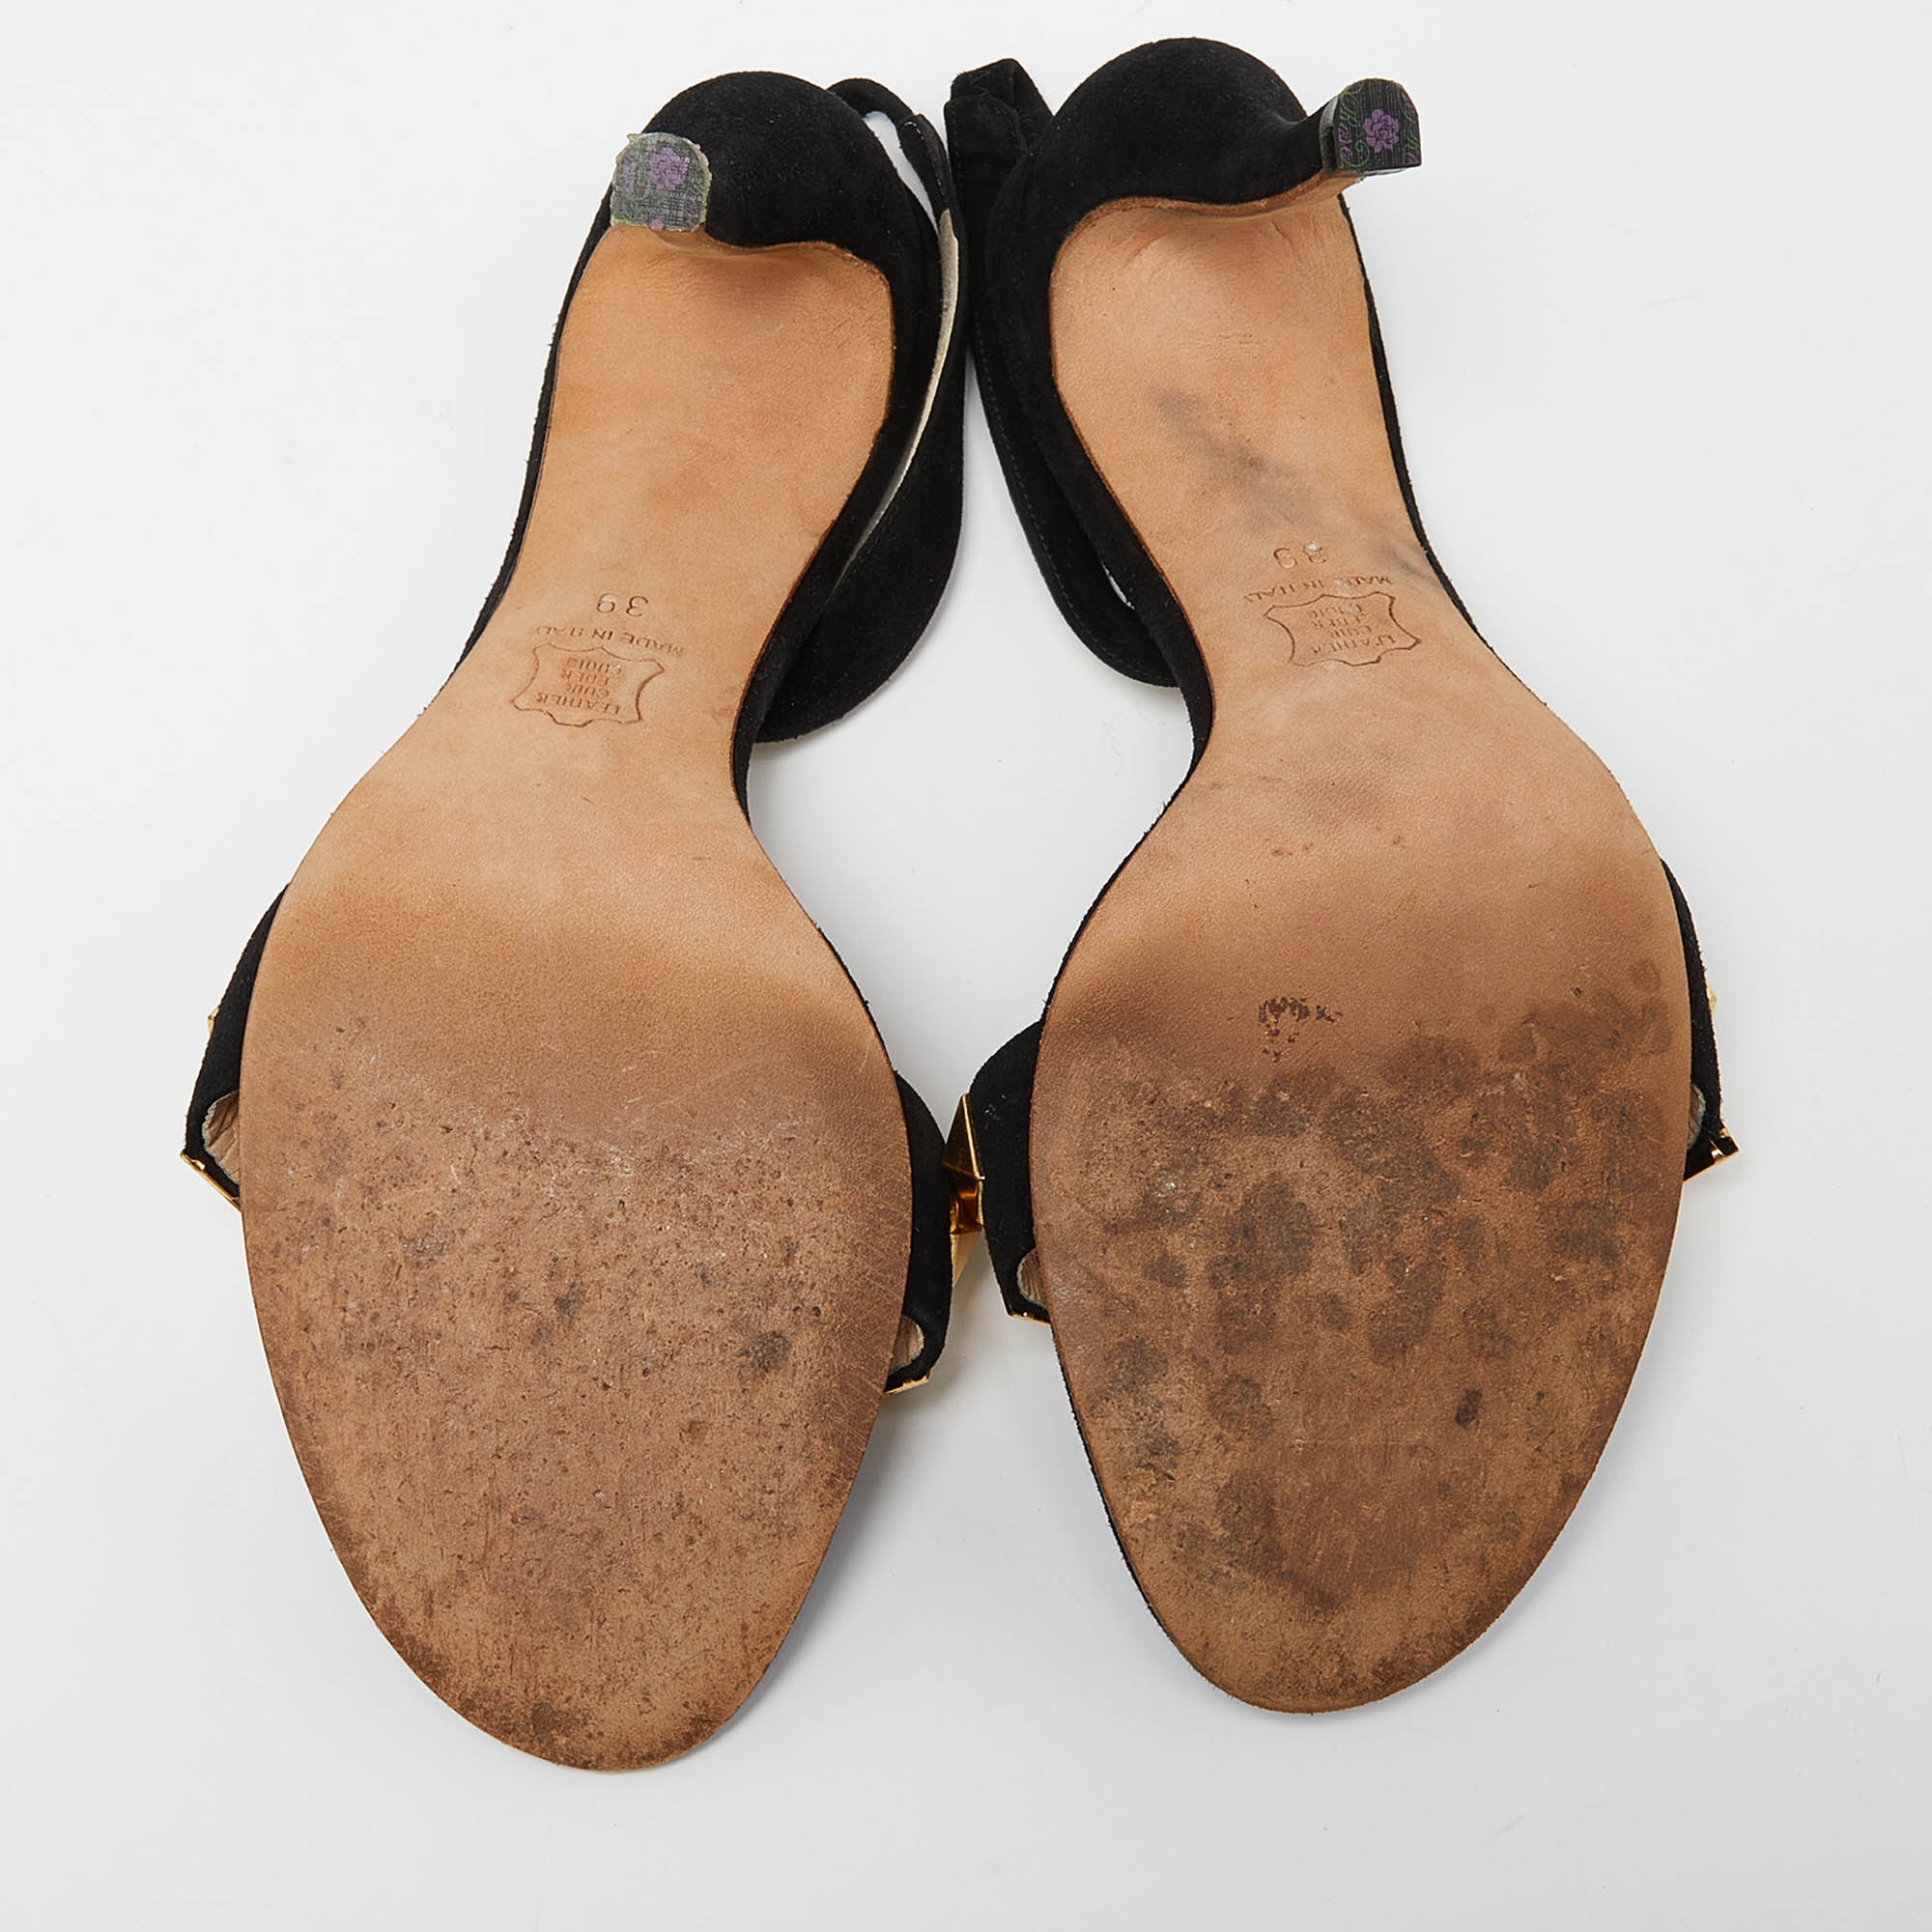 Fendi Black Suede Studded Slingback Sandals Size 39